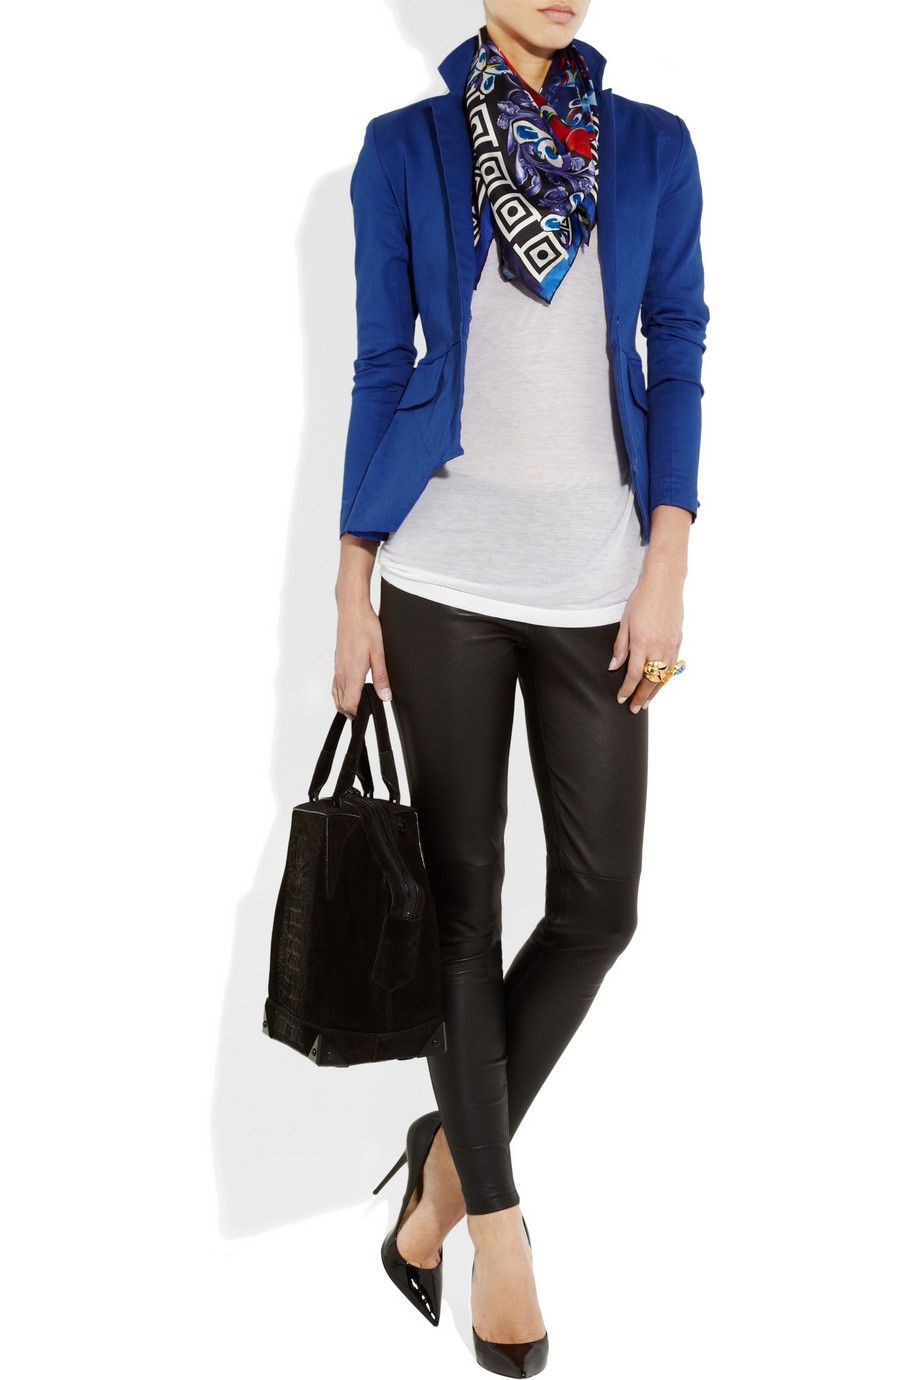 Outfit ejecutivo con saco azul | Blue Blazer Outfit Women | Blazer Outfit,  Business casual, Cobalt blue